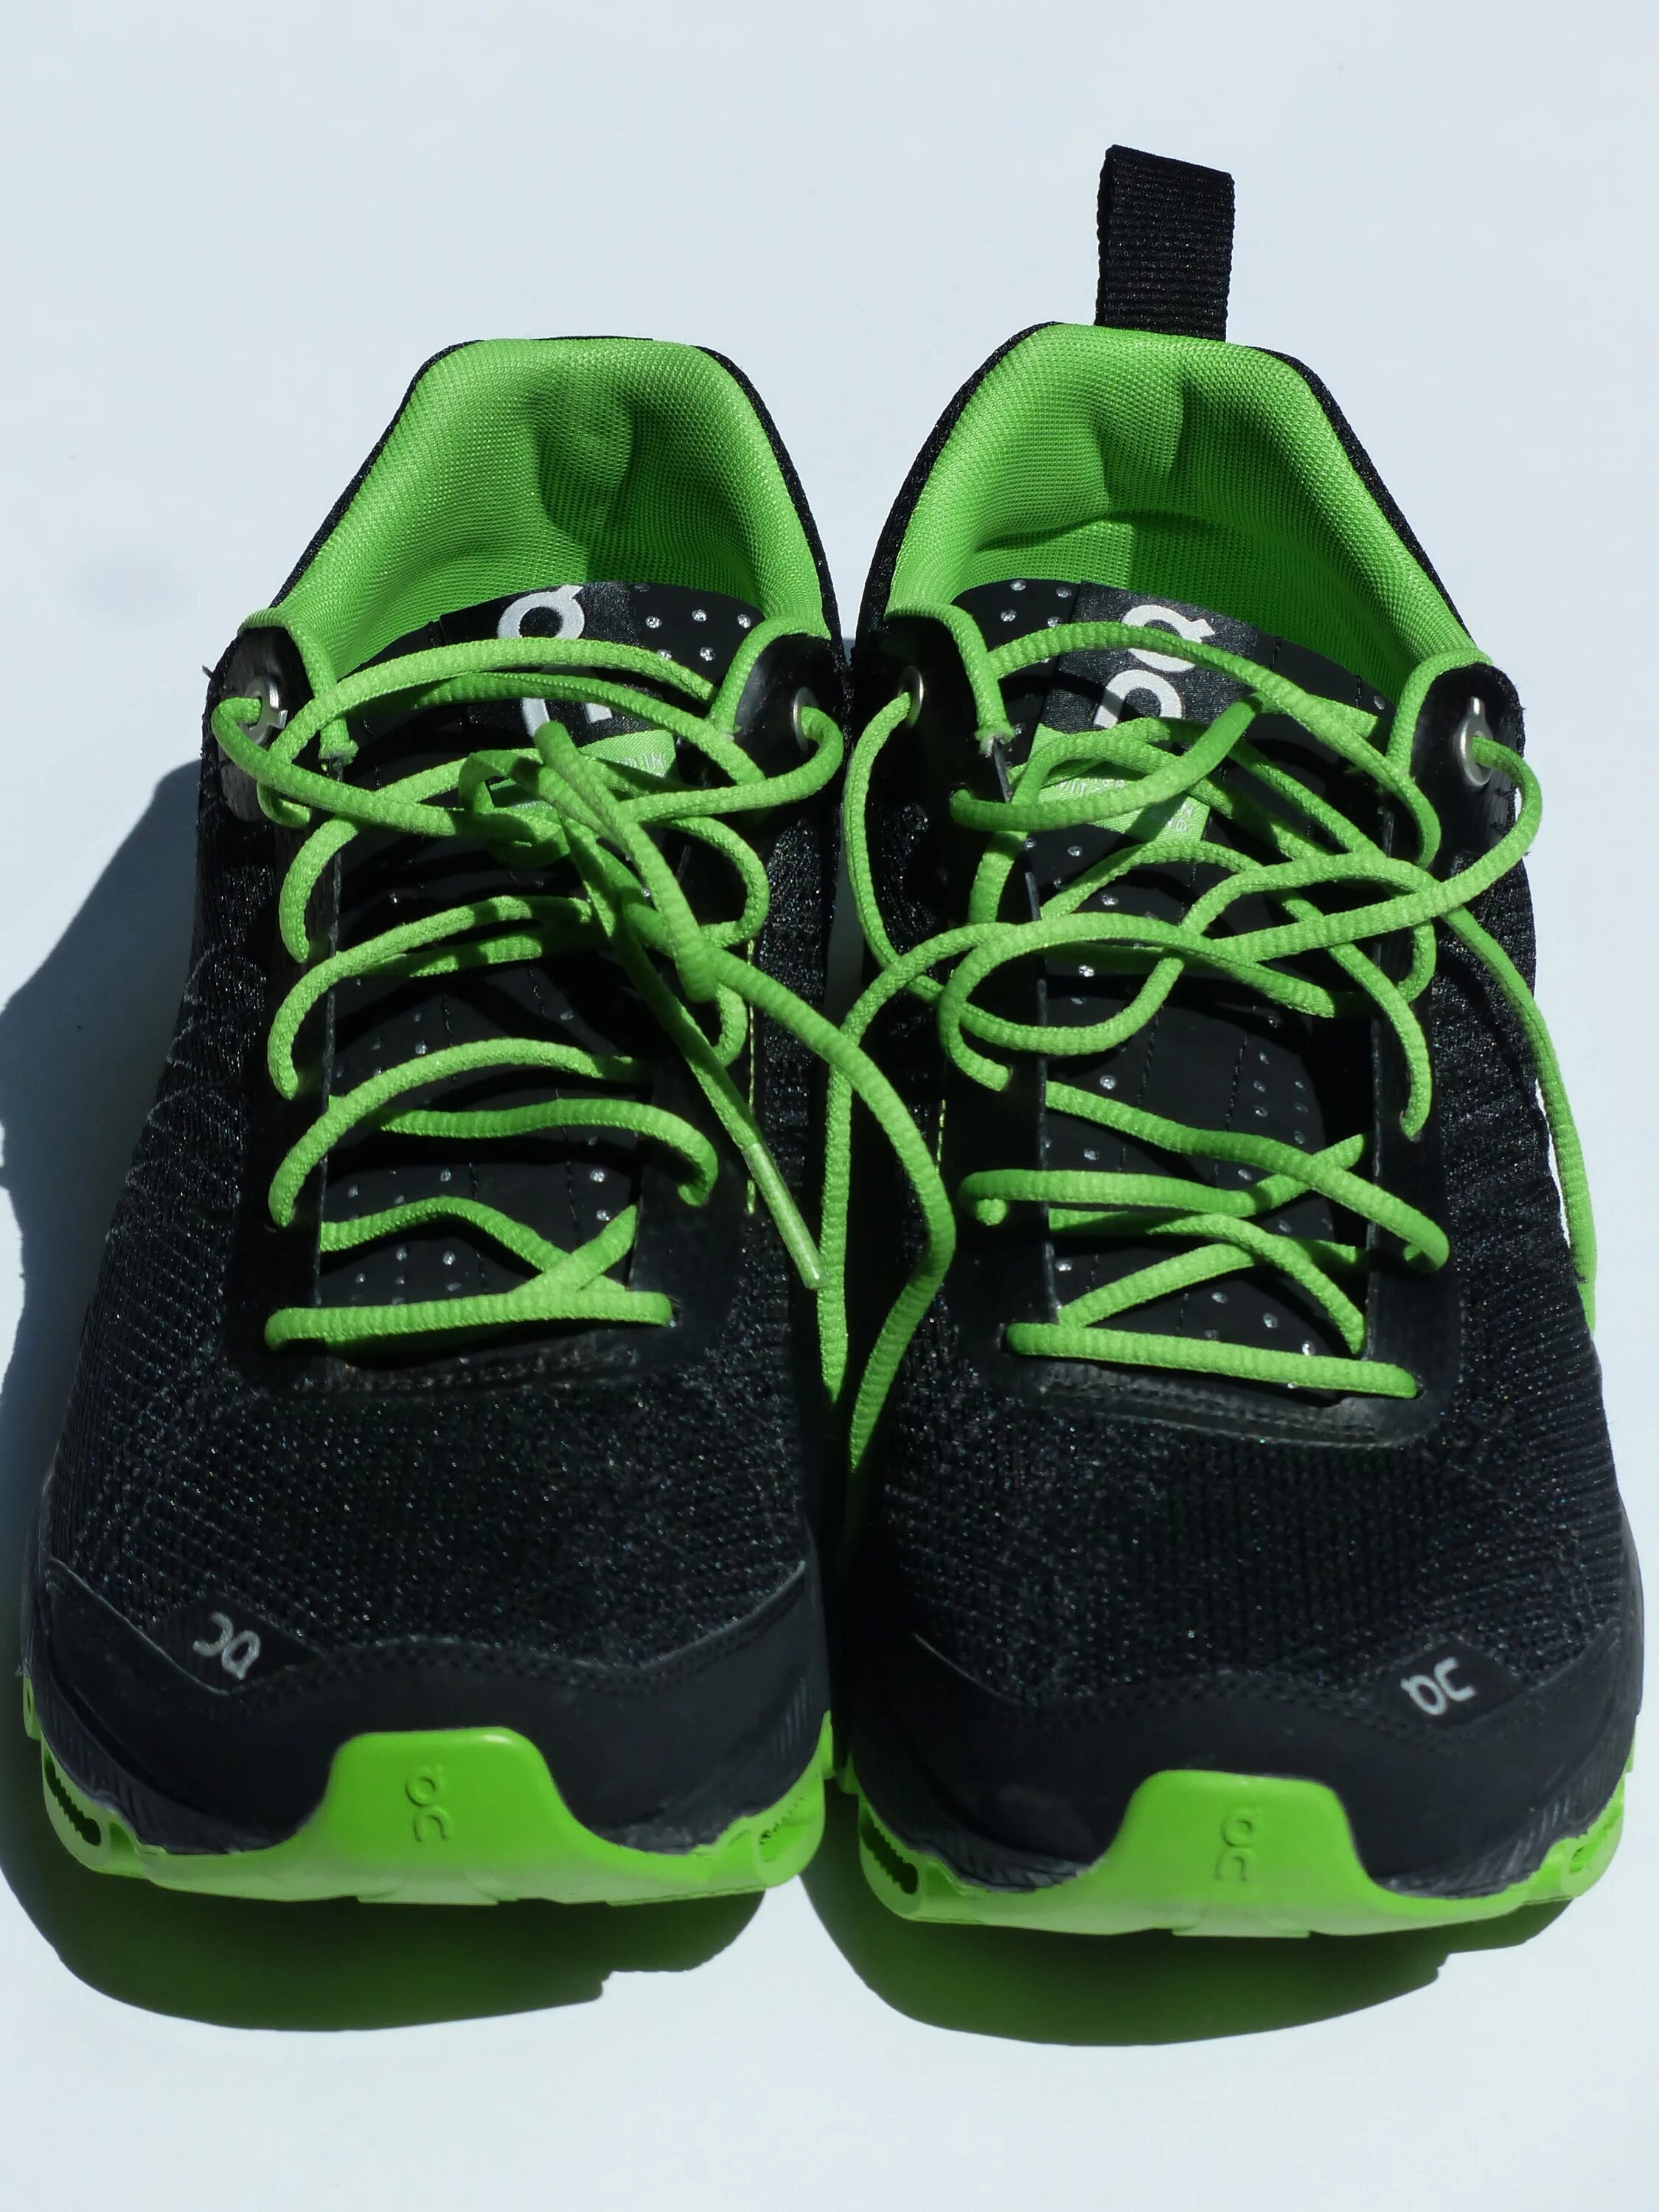 Кроссовки цвет шнурков. Black Green 2000 кроссовки. Кроссовки найк для бега черные с зеленой подошвой. Кроссовки найк для бега зеленые. Кроссовки найк для бега черные с зеленой подошвой женские.